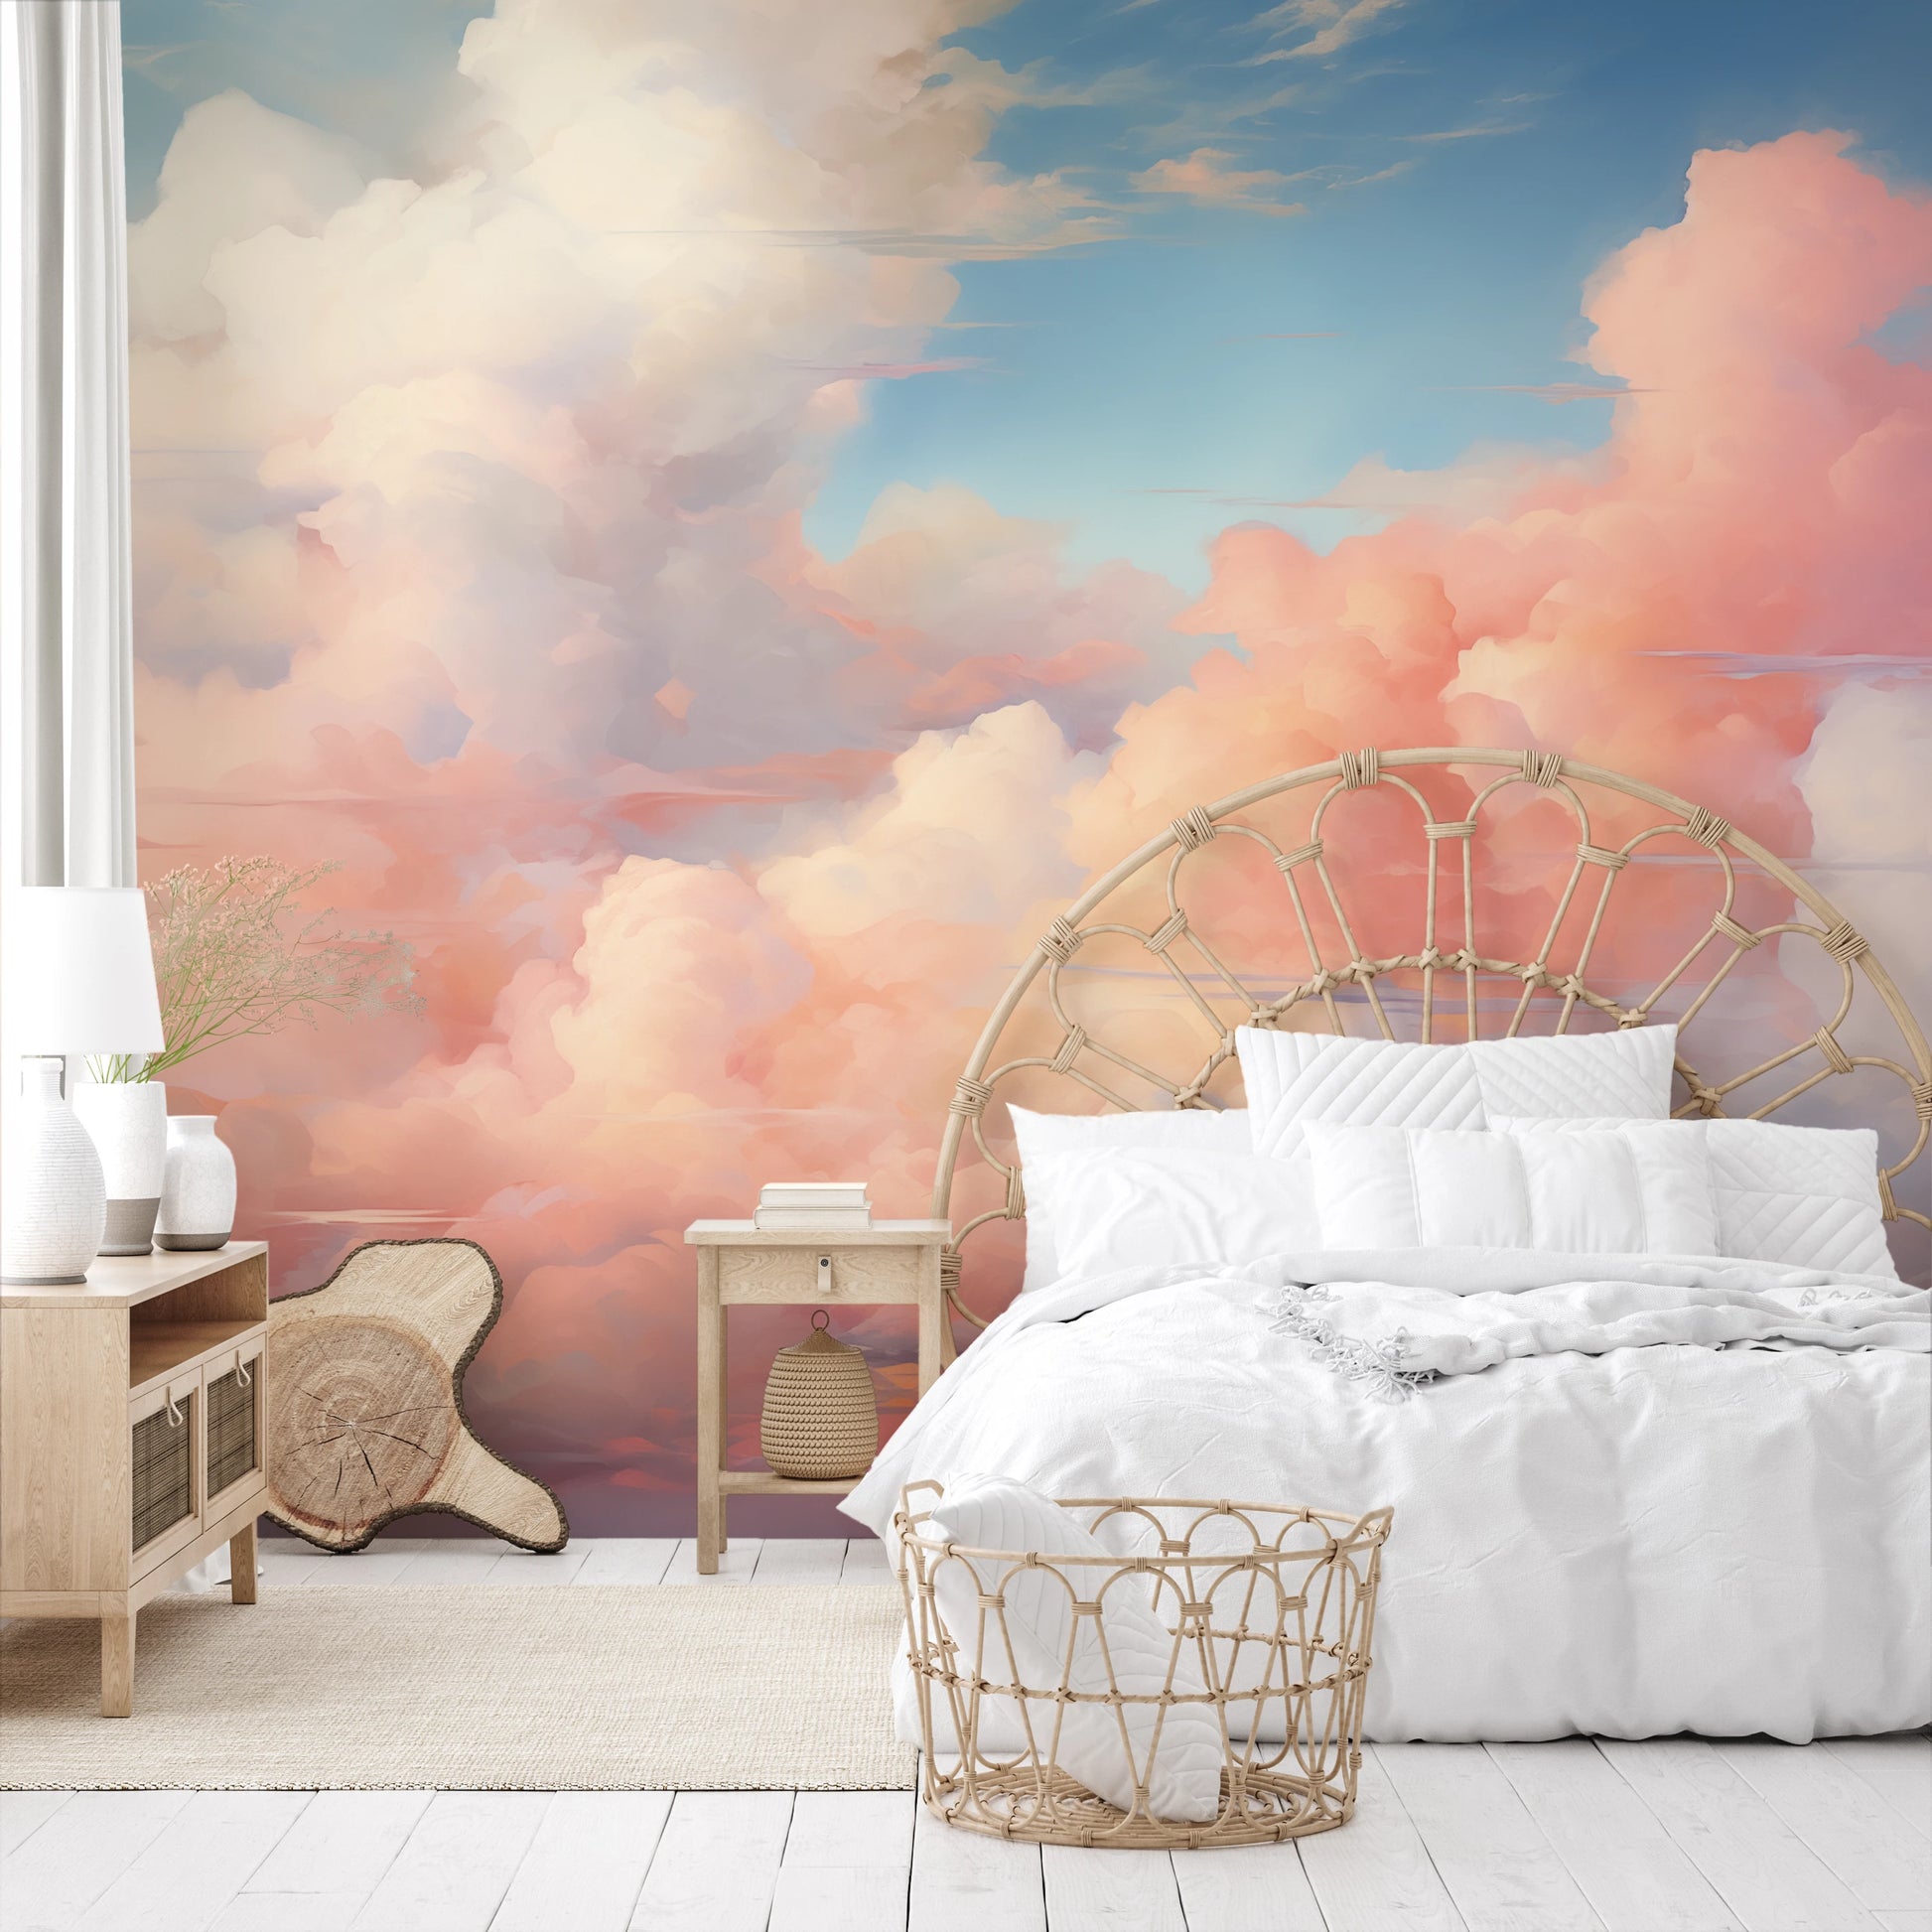 Wzór fototapety malowanej o nazwie Blushing Skies pokazanej w aranżacji wnętrza.